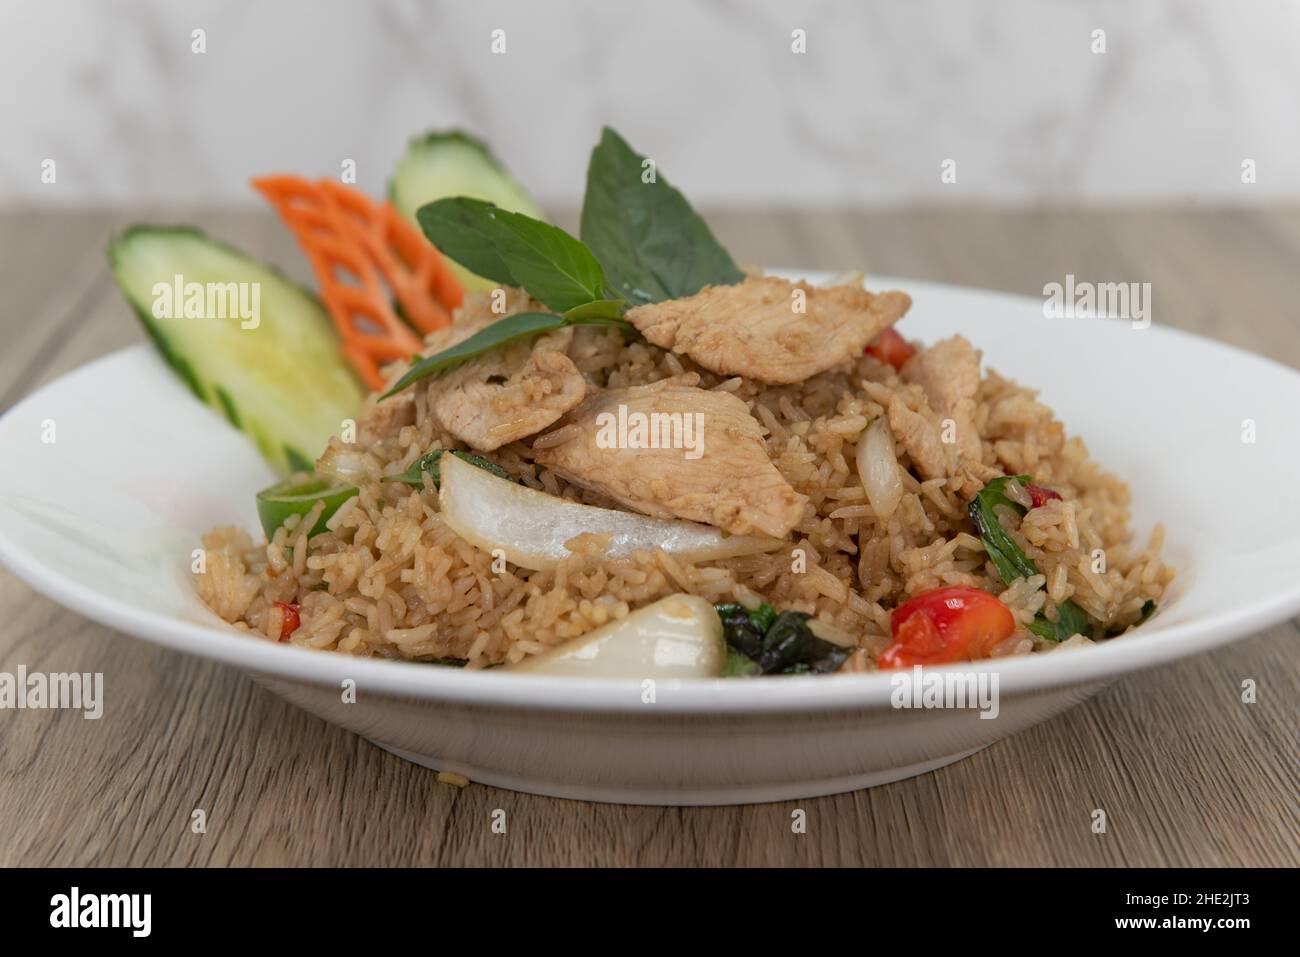 Großzügige Portion würzigen gebratenen Reis mit geschnittenem Huhn für einen köstlichen Stapel thailändischer Speisen zu essen. Stockfoto